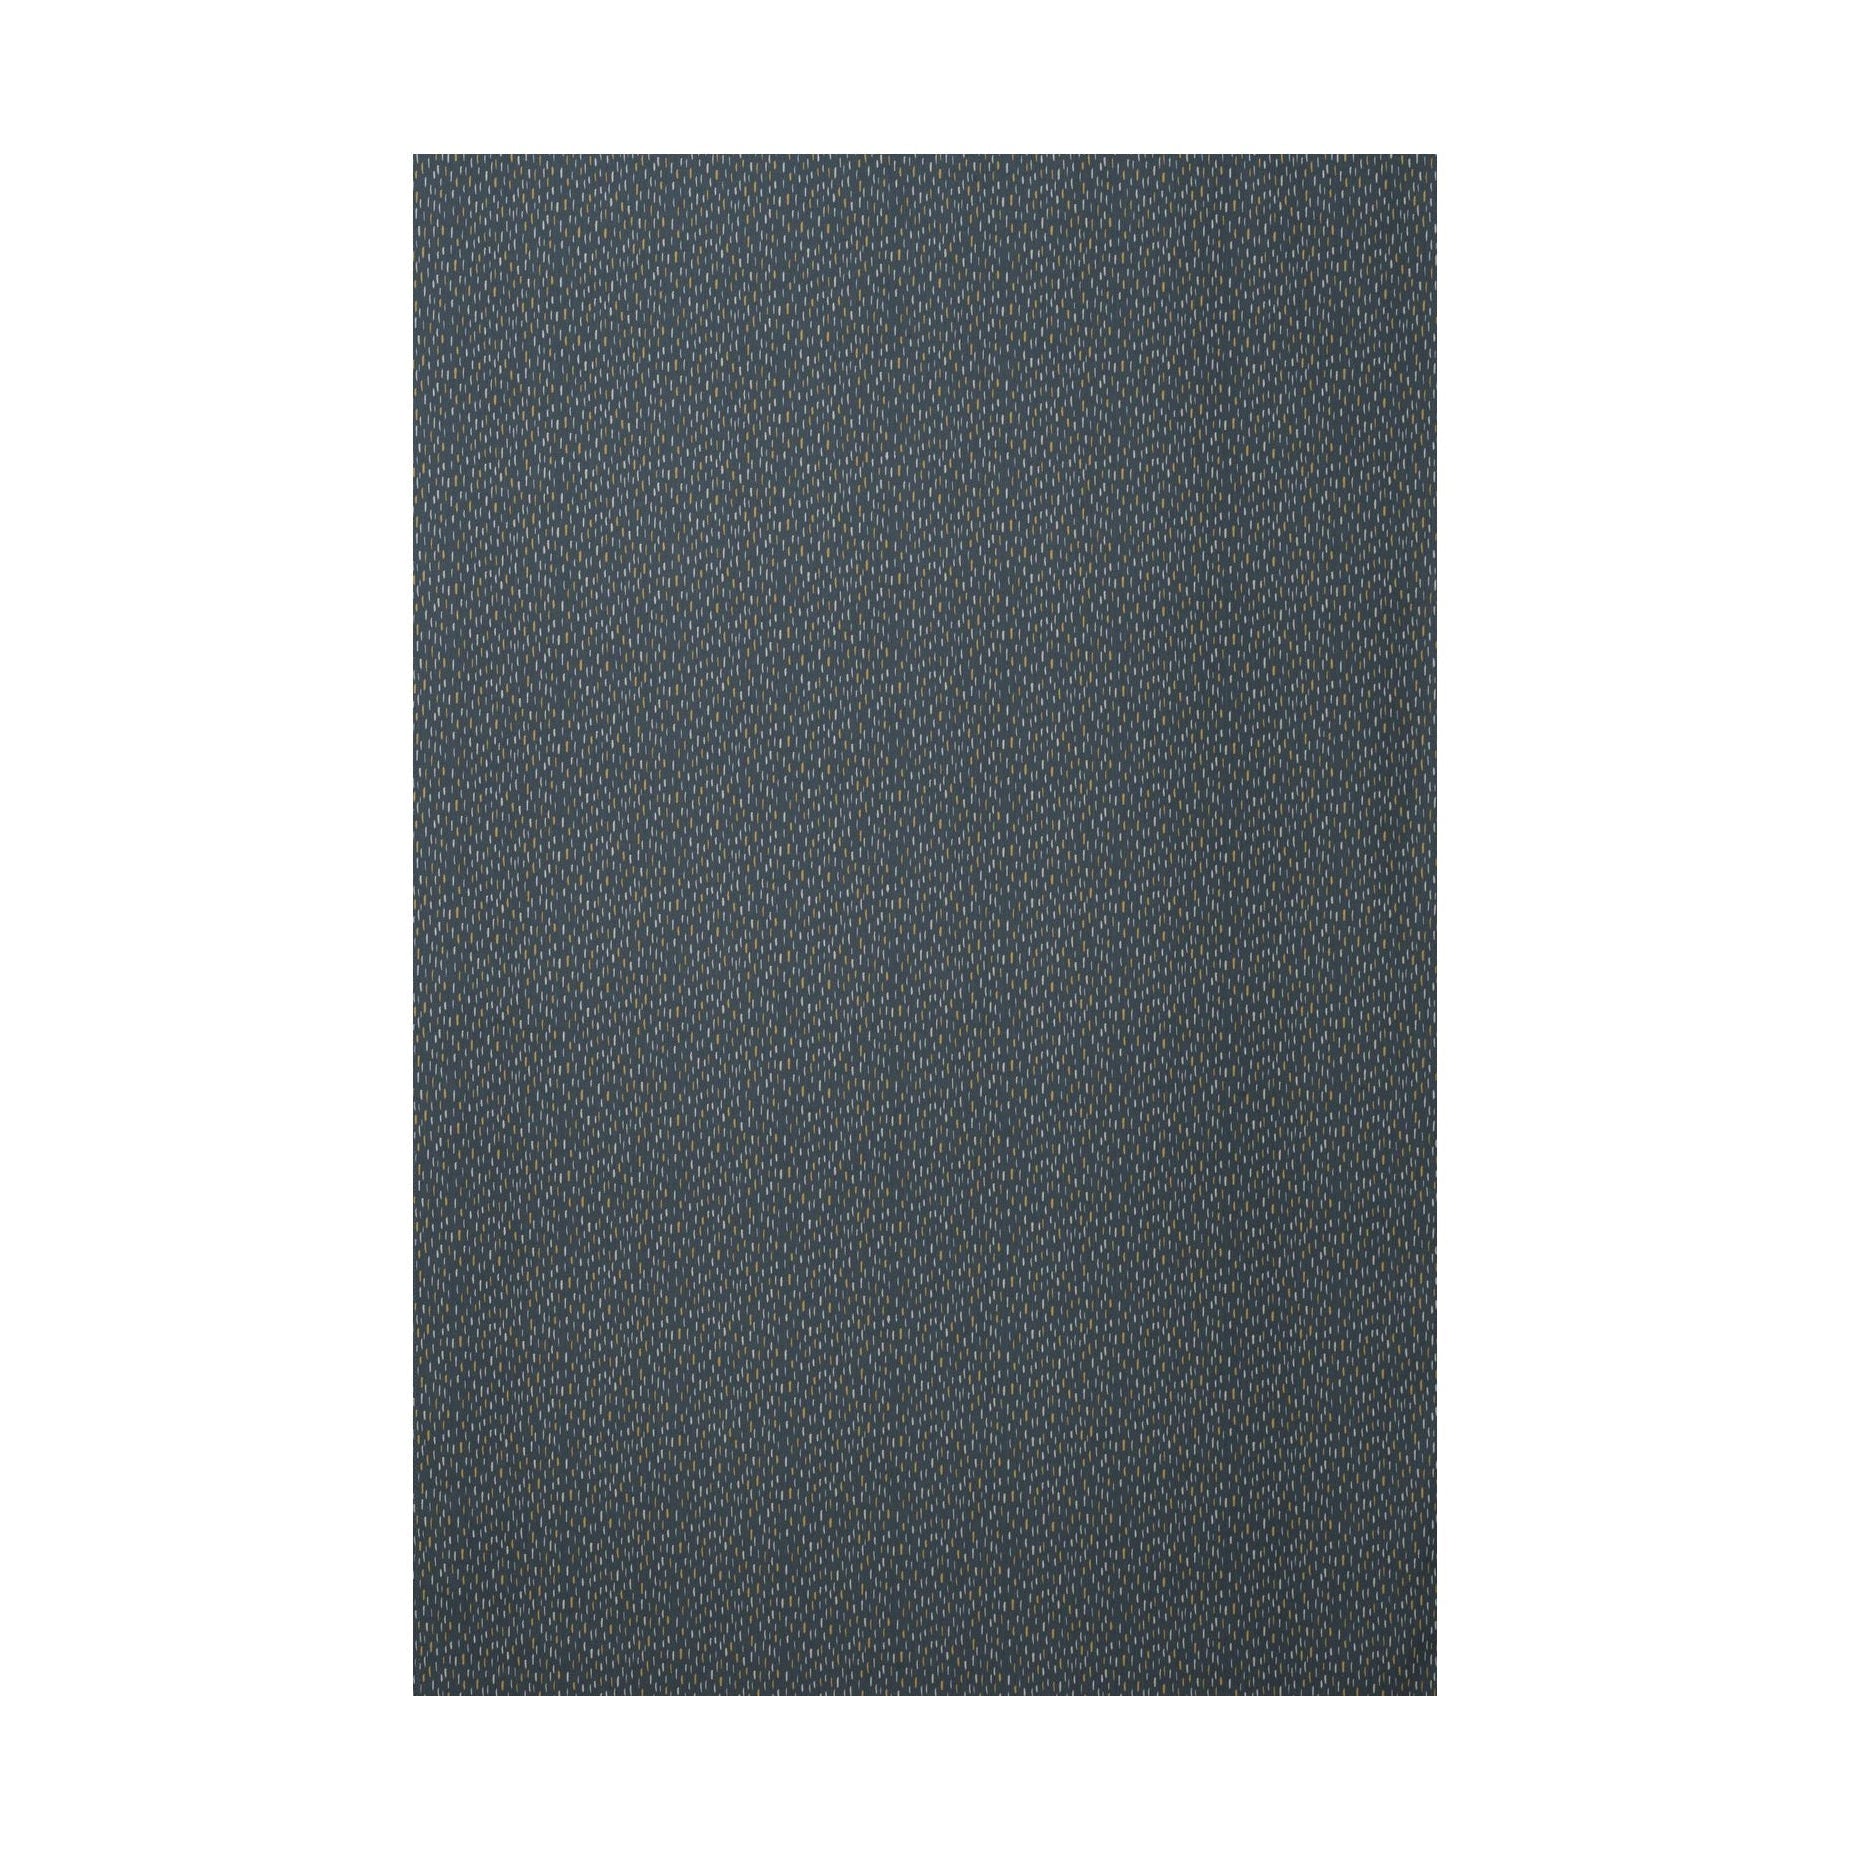 Spira Art Fabric Breite 150 Cm (Preis pro Meter), Blau